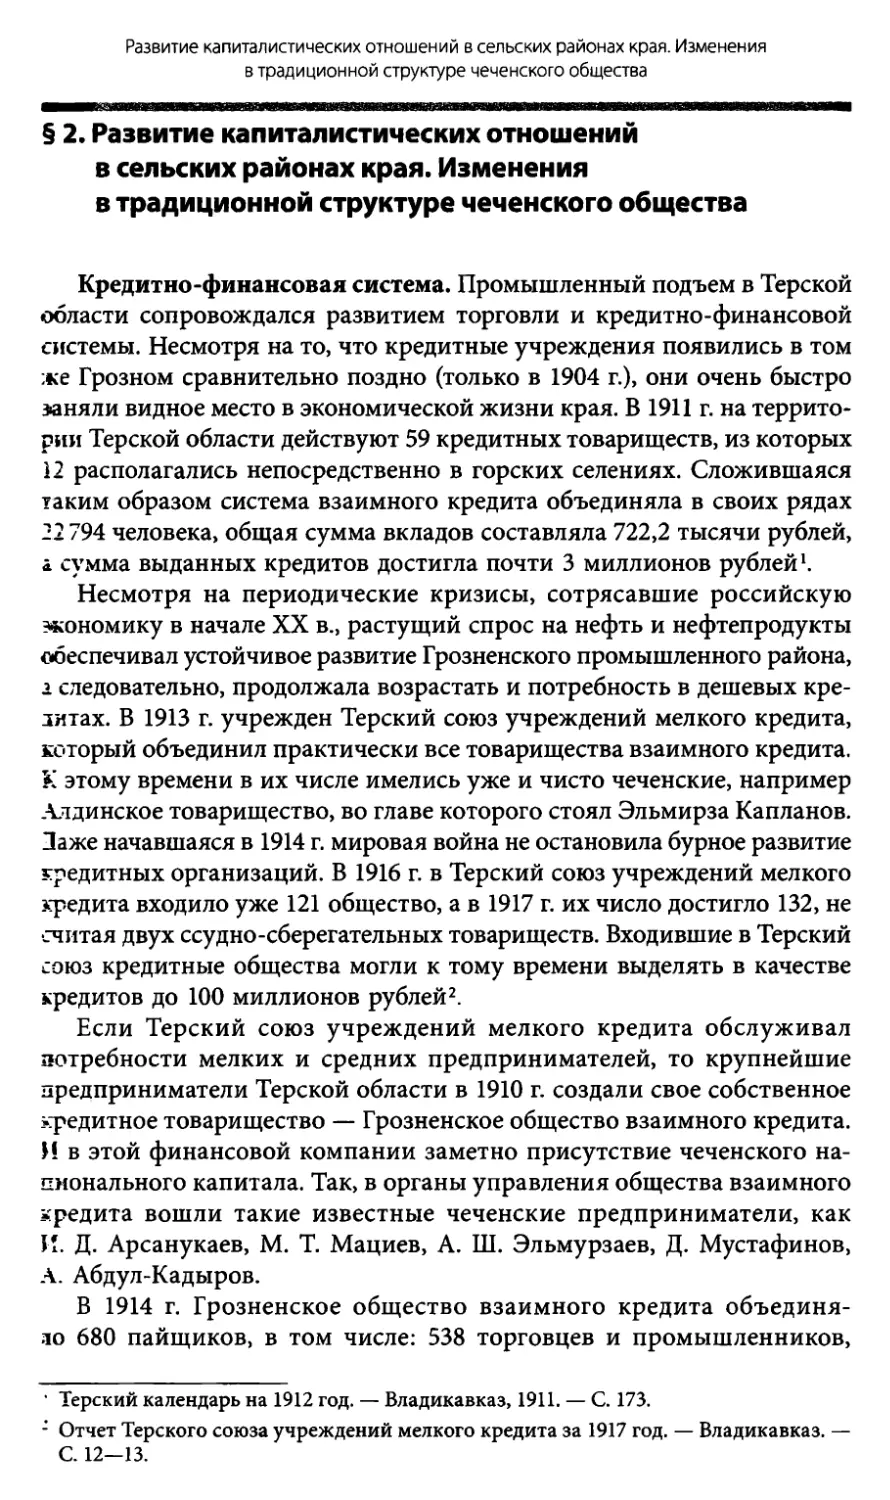 § 2. Развитие капиталистических отношений в сельских районах края. Изменения в традиционной структуре чеченского общества